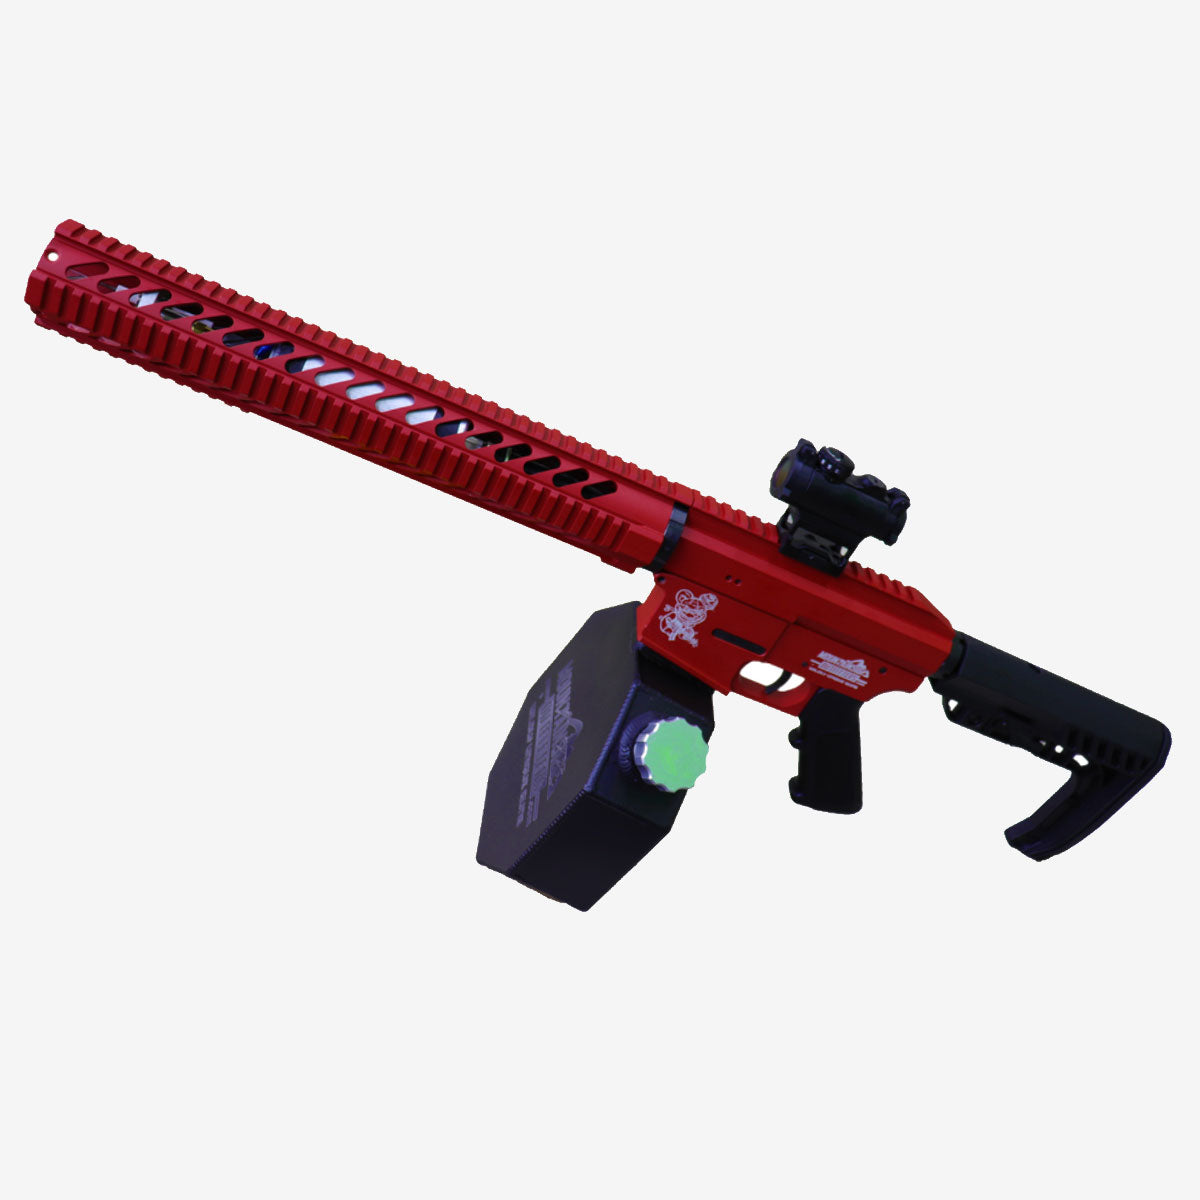 Pyro-15 AR Flamethrower - Red